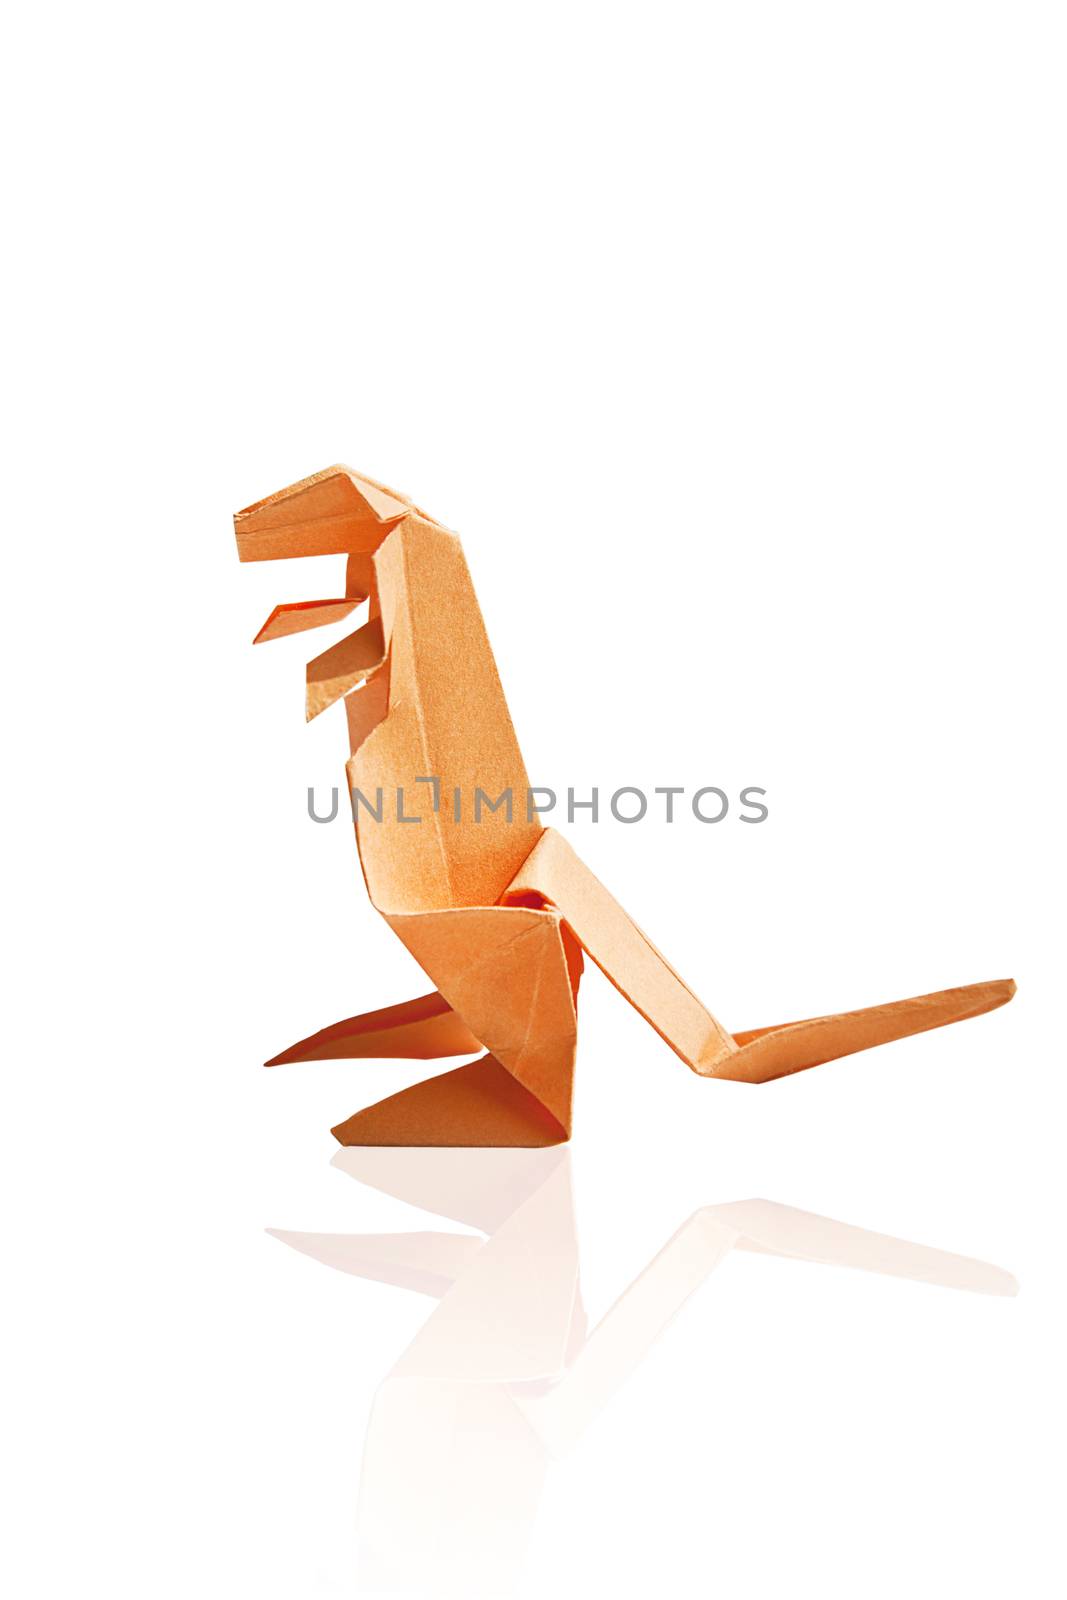 Orange origami dinosaur isolated on white background.